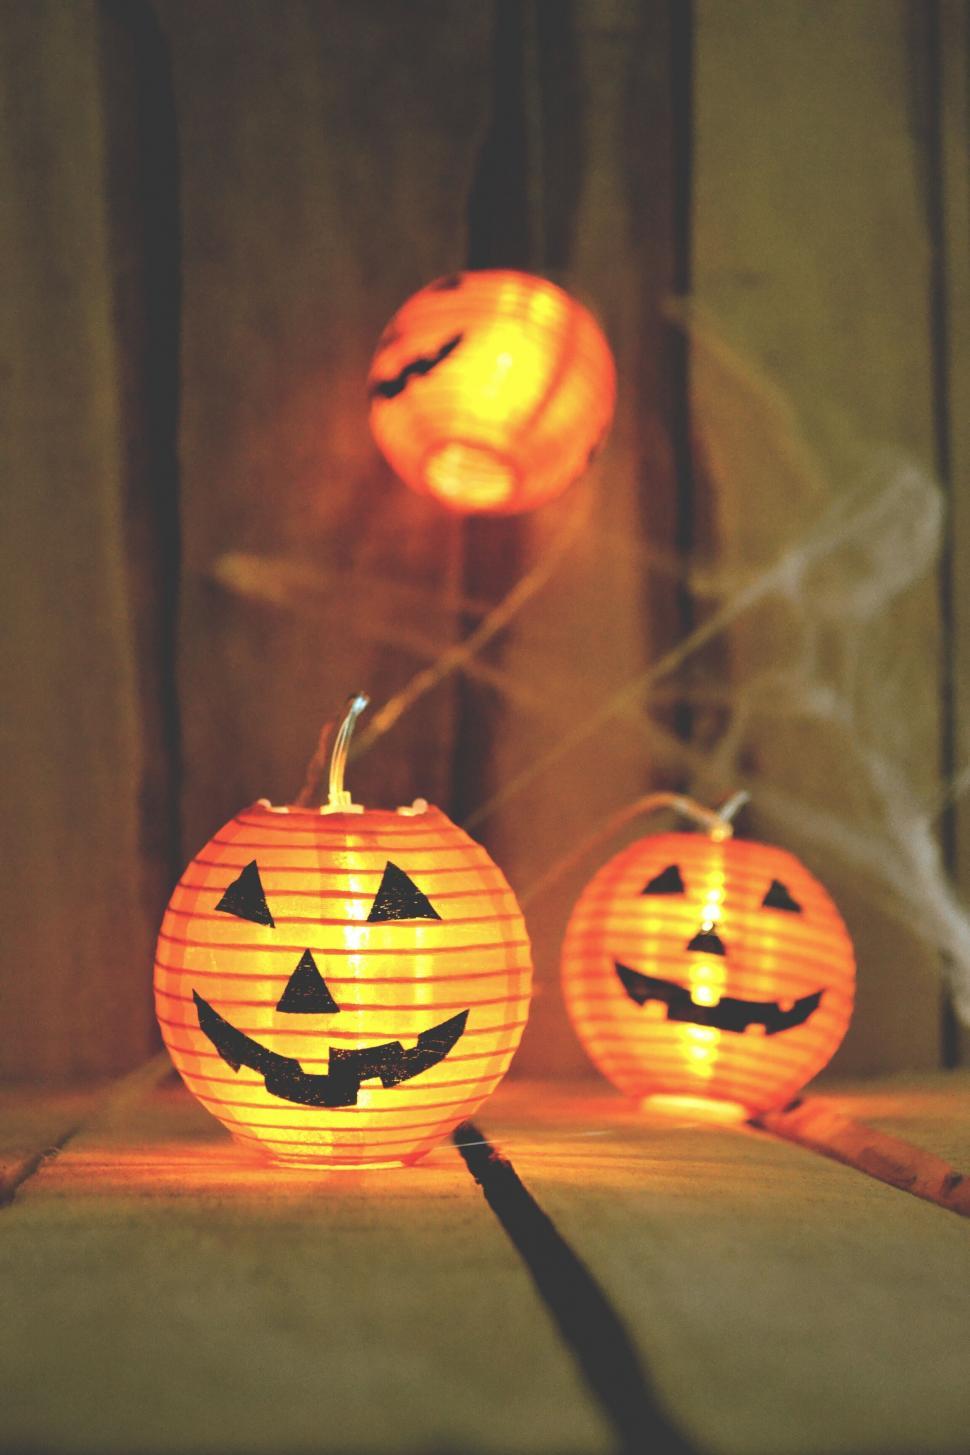 Free Image of Illuminated Jack-o -lantern decorations 